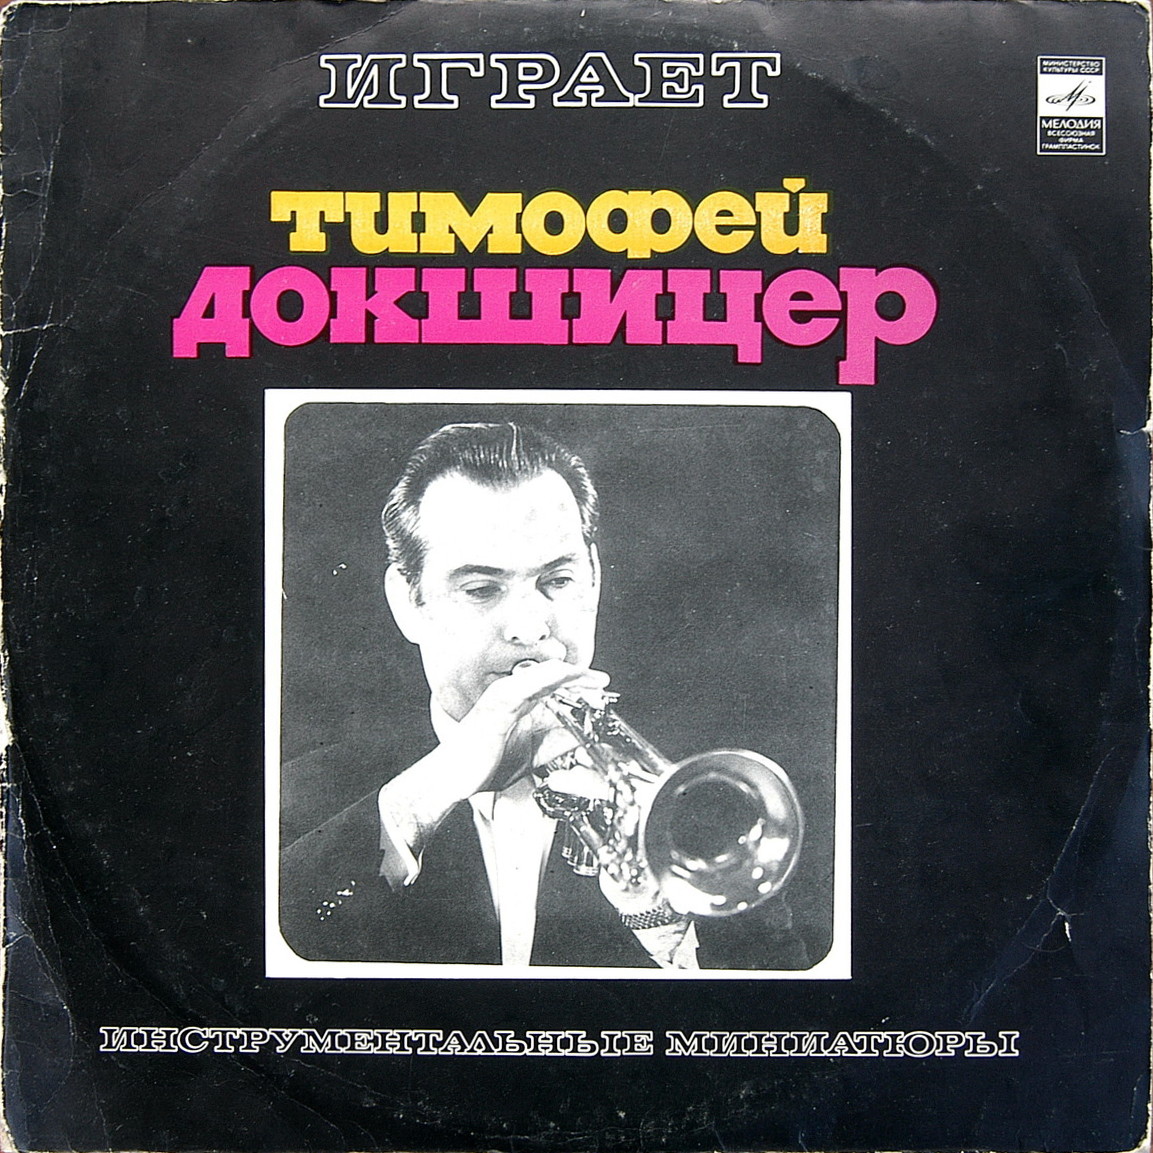 Тимофей Докшицер (труба)